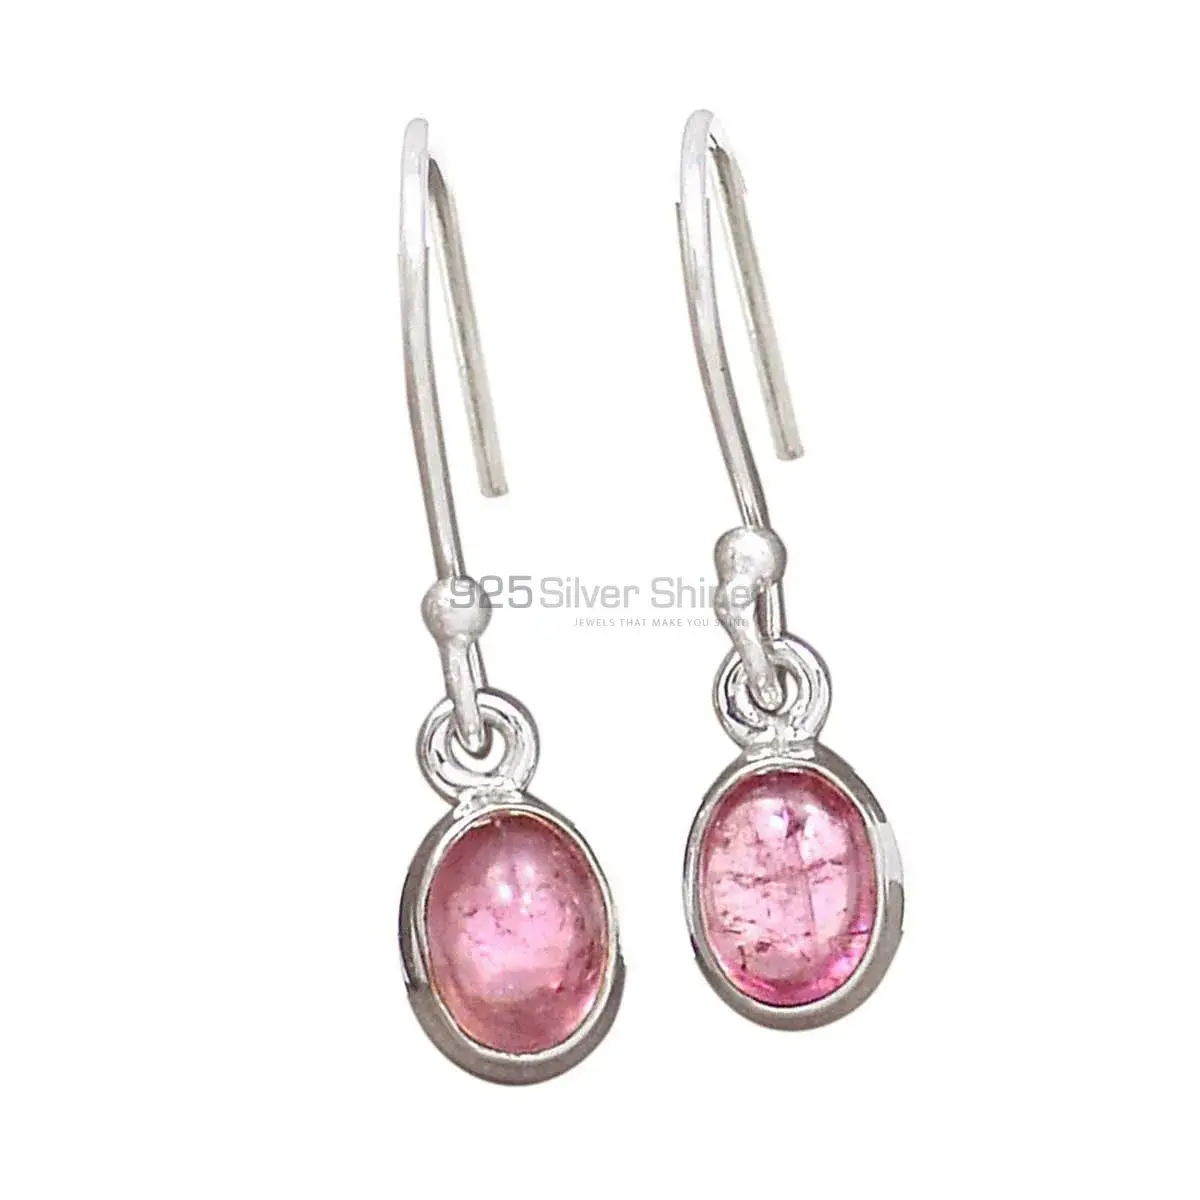 925 Sterling Silver Handmade Earrings Suppliers In Garnet Gemstone Jewelry 925SE2691